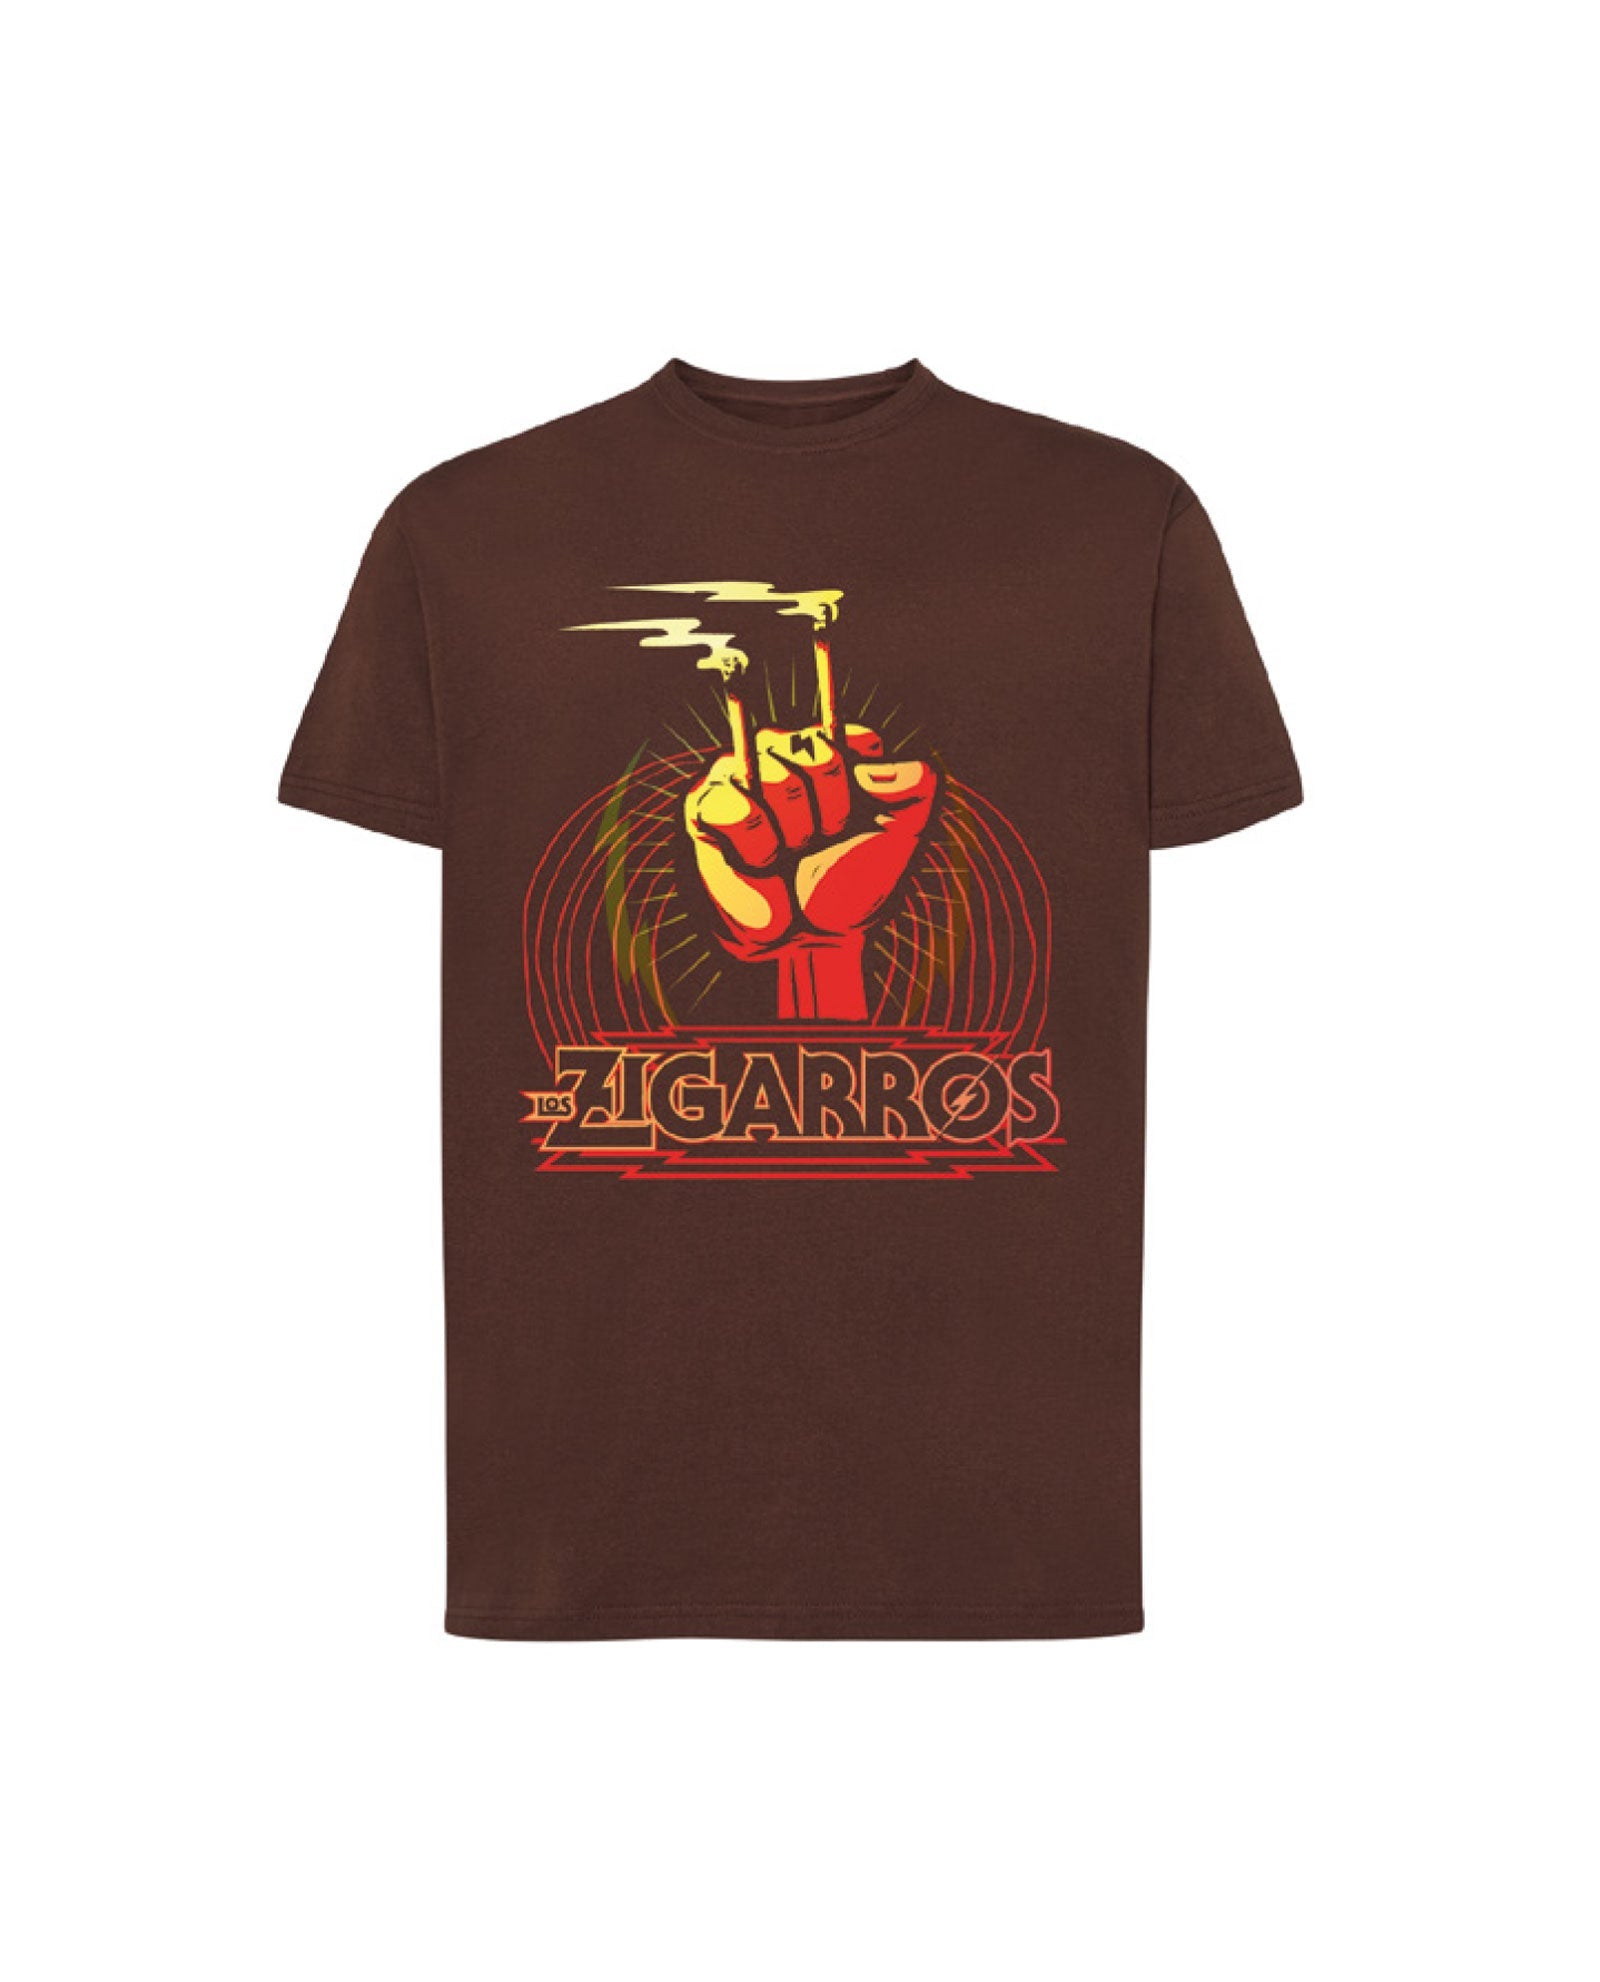 Camiseta Marrón "Puño" - Los Zigarros - Rocktud - Los Zigarros